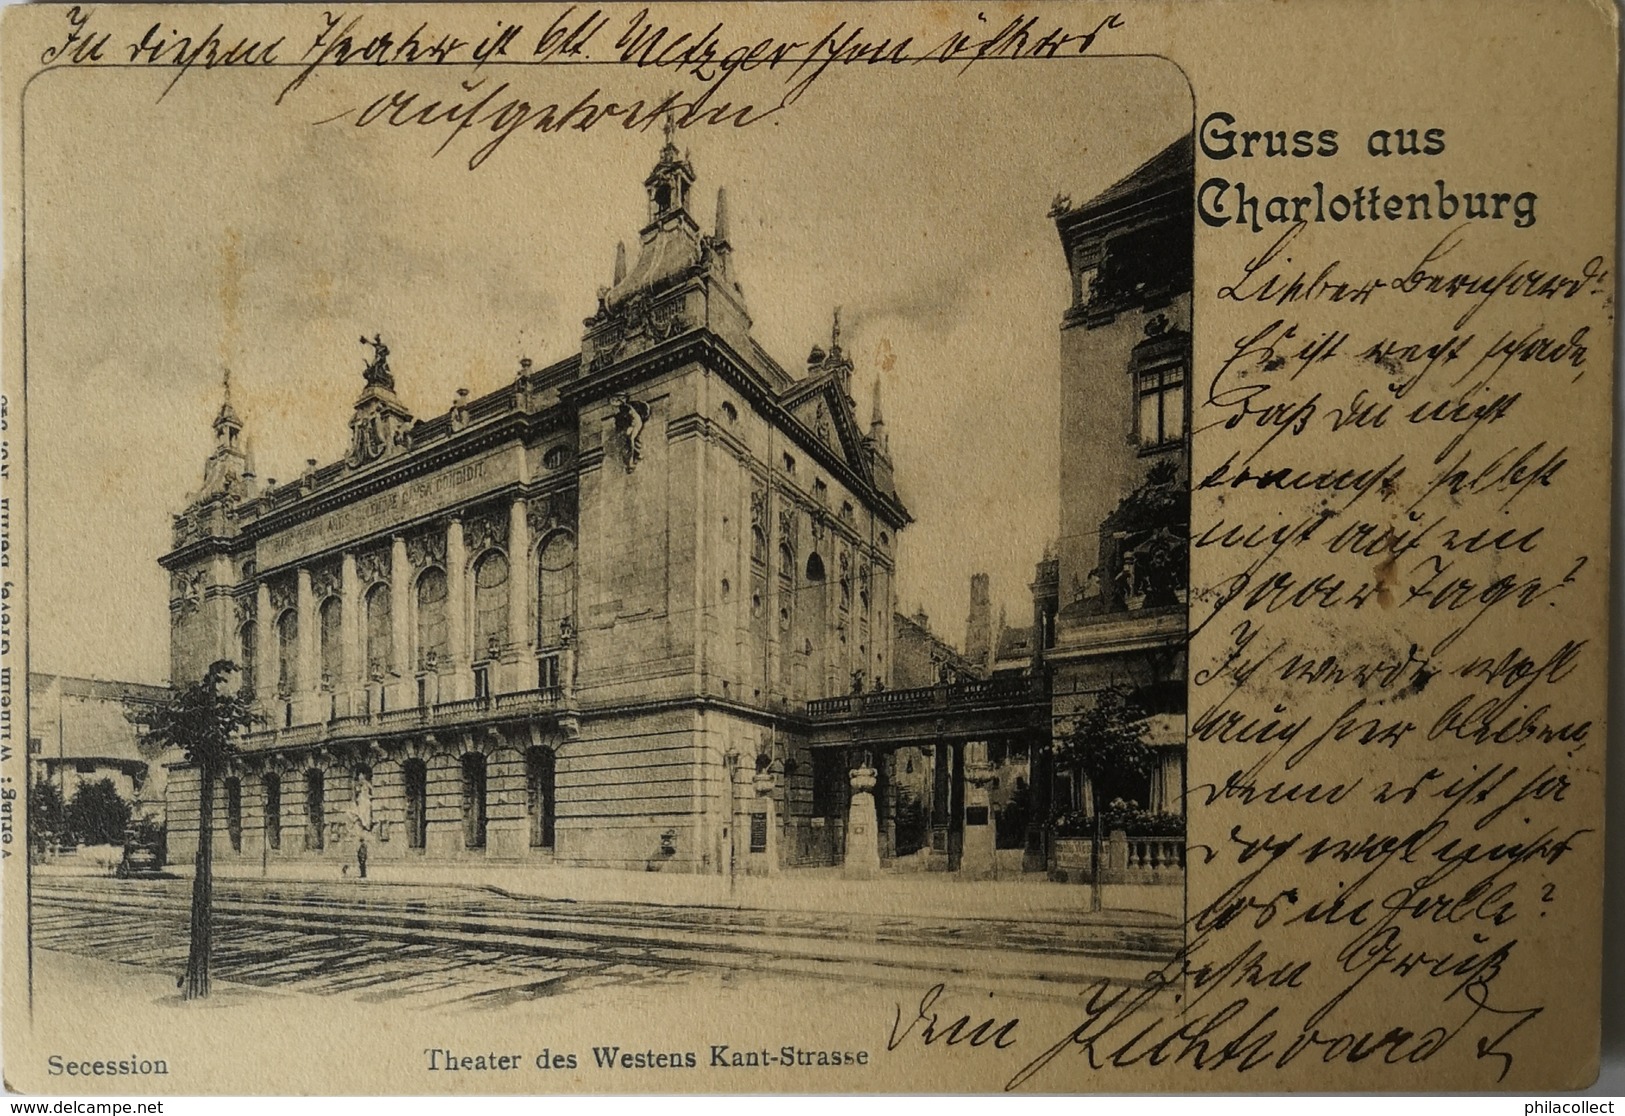 Charlottenburg (Berlin) Gruss Aus // Theater Des Westerns Kant Strasse 1902 - Charlottenburg